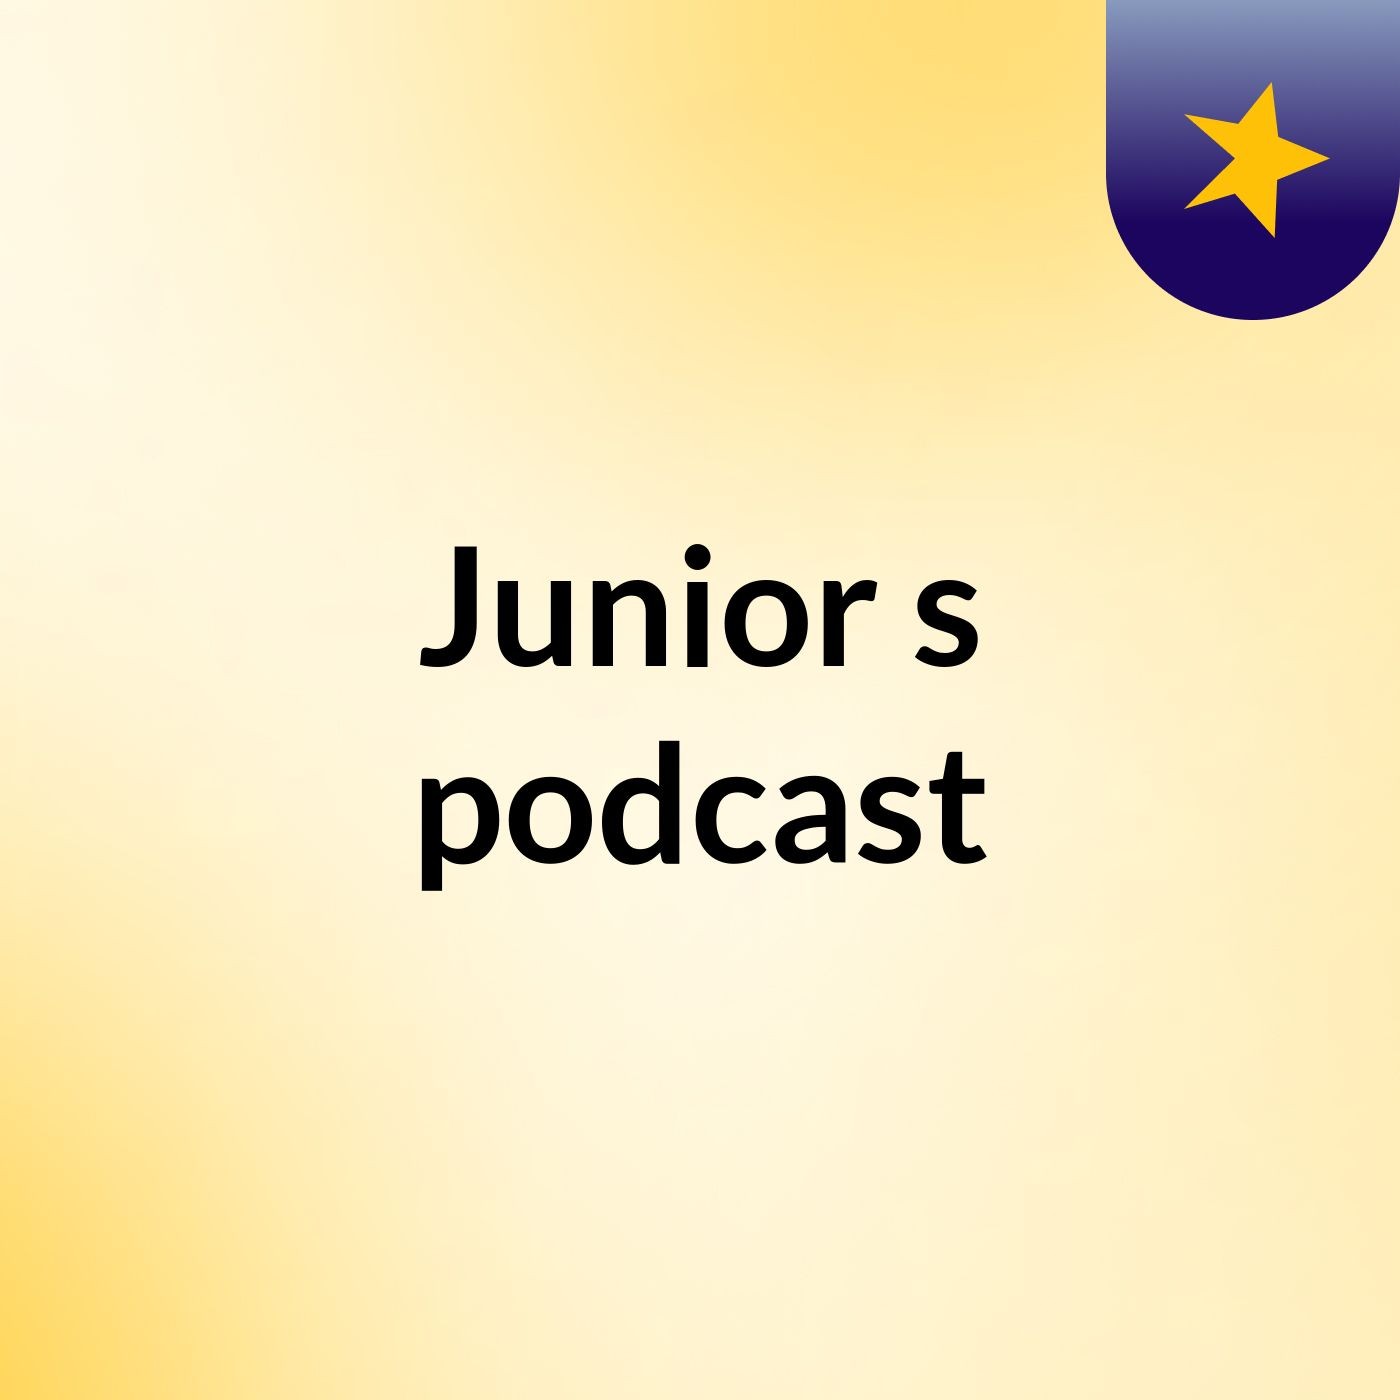 Episode 1 - Junior's podcast